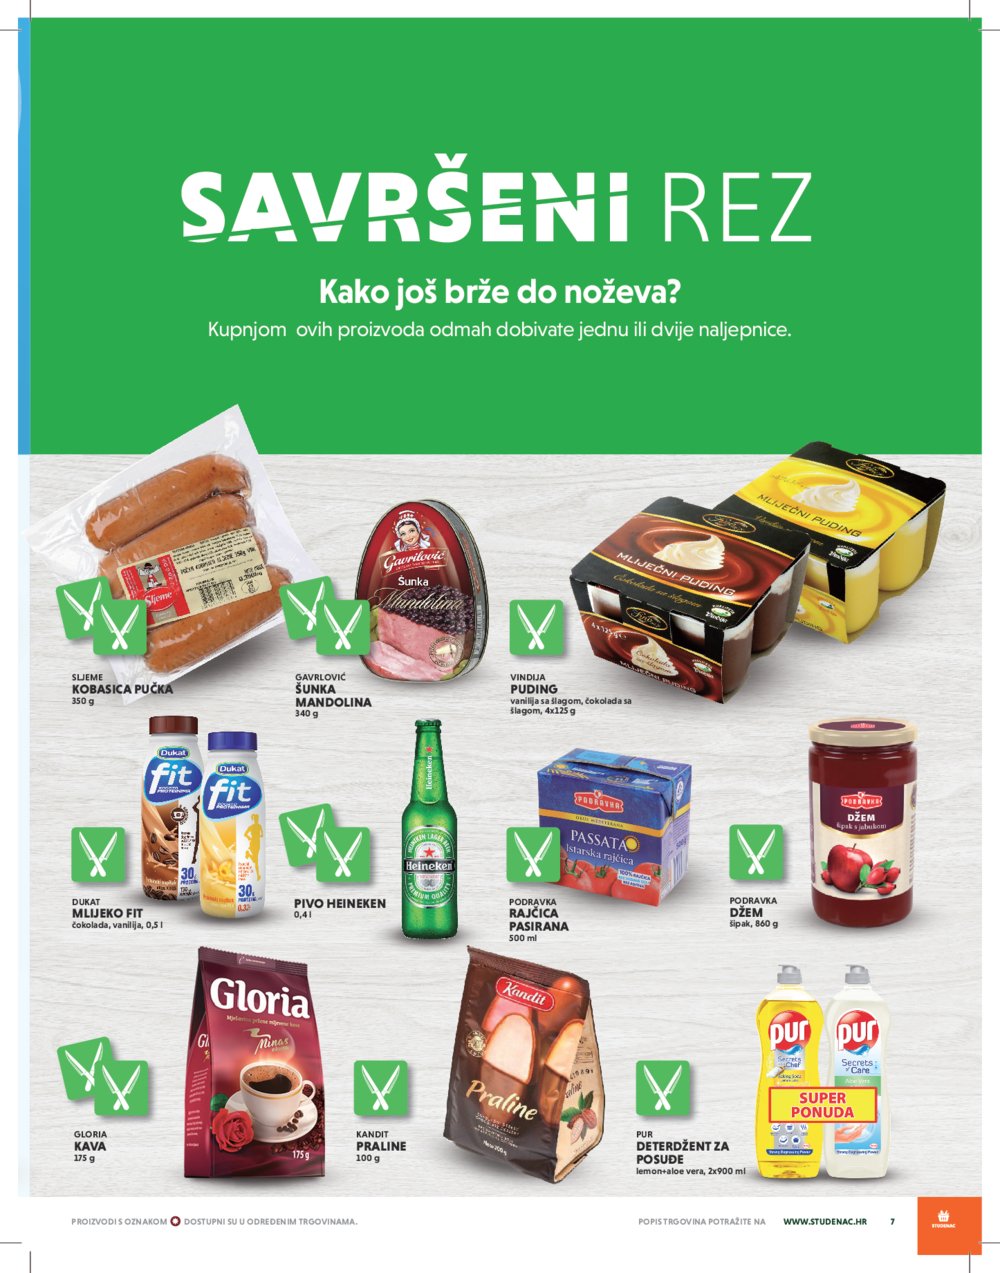 Istarski supermarketi-Studenac katalog Tjedna akcija 27.02.-04.03.2020.